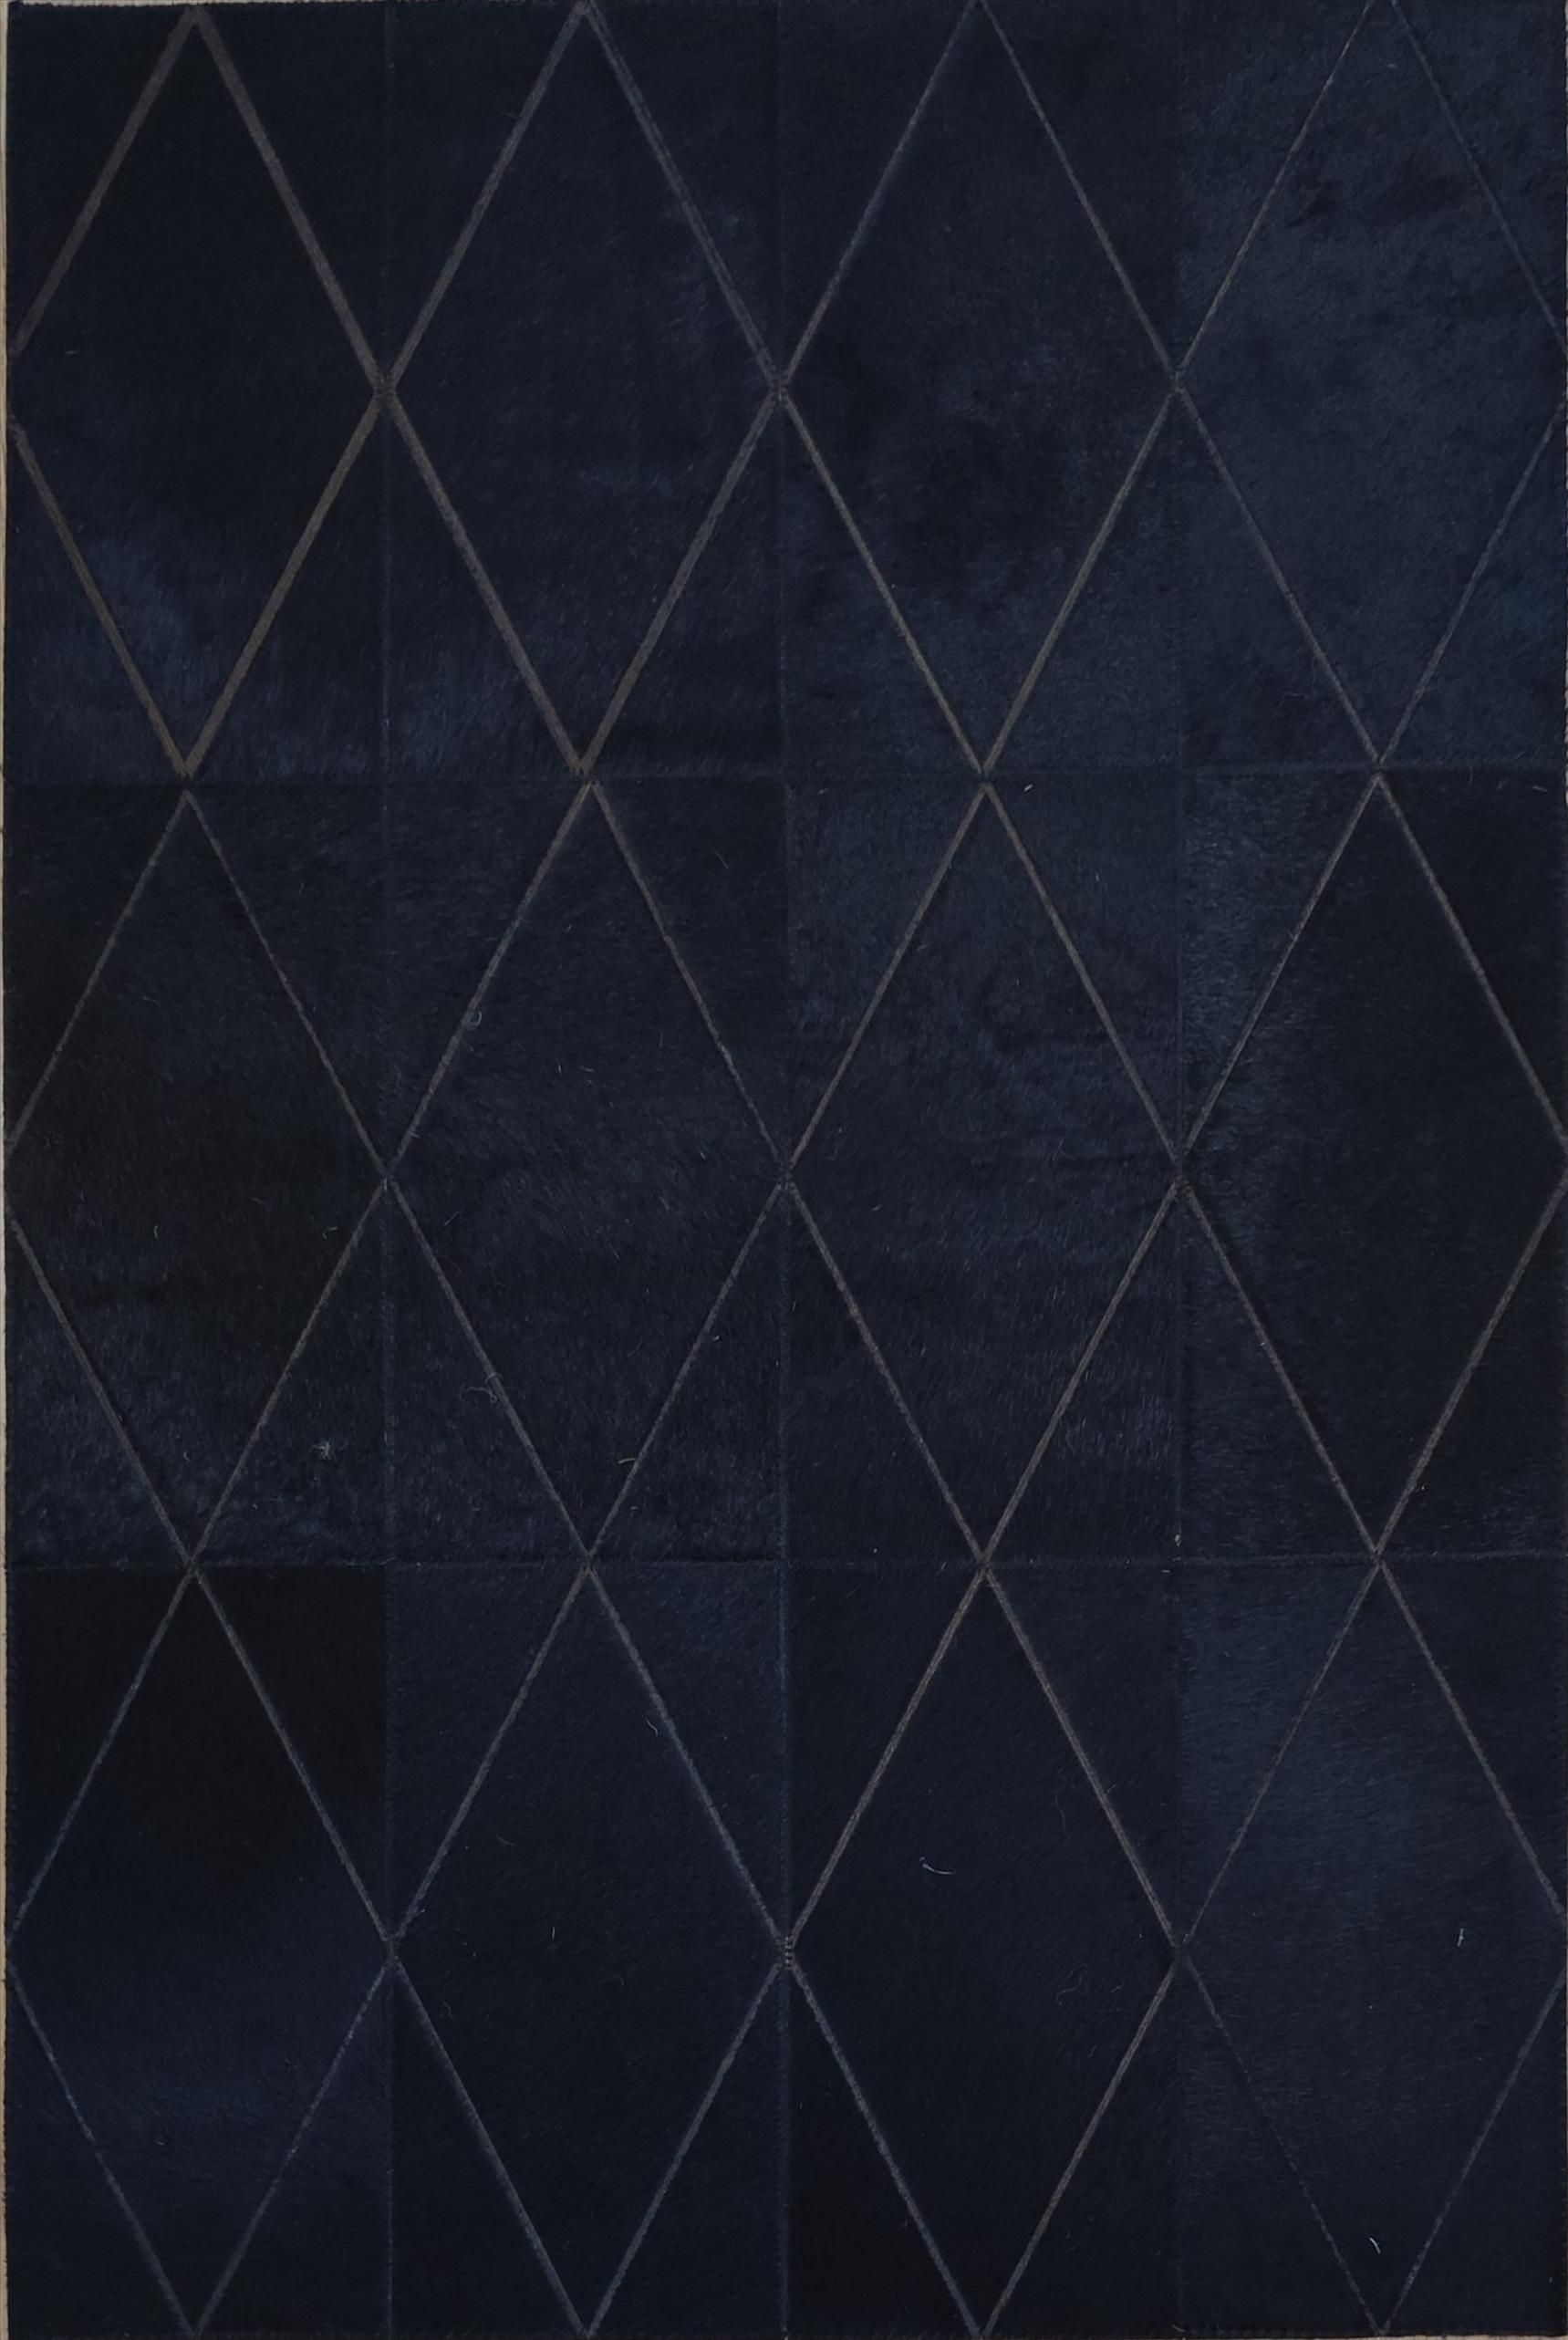 Moderní koberec Kůže Excelsior